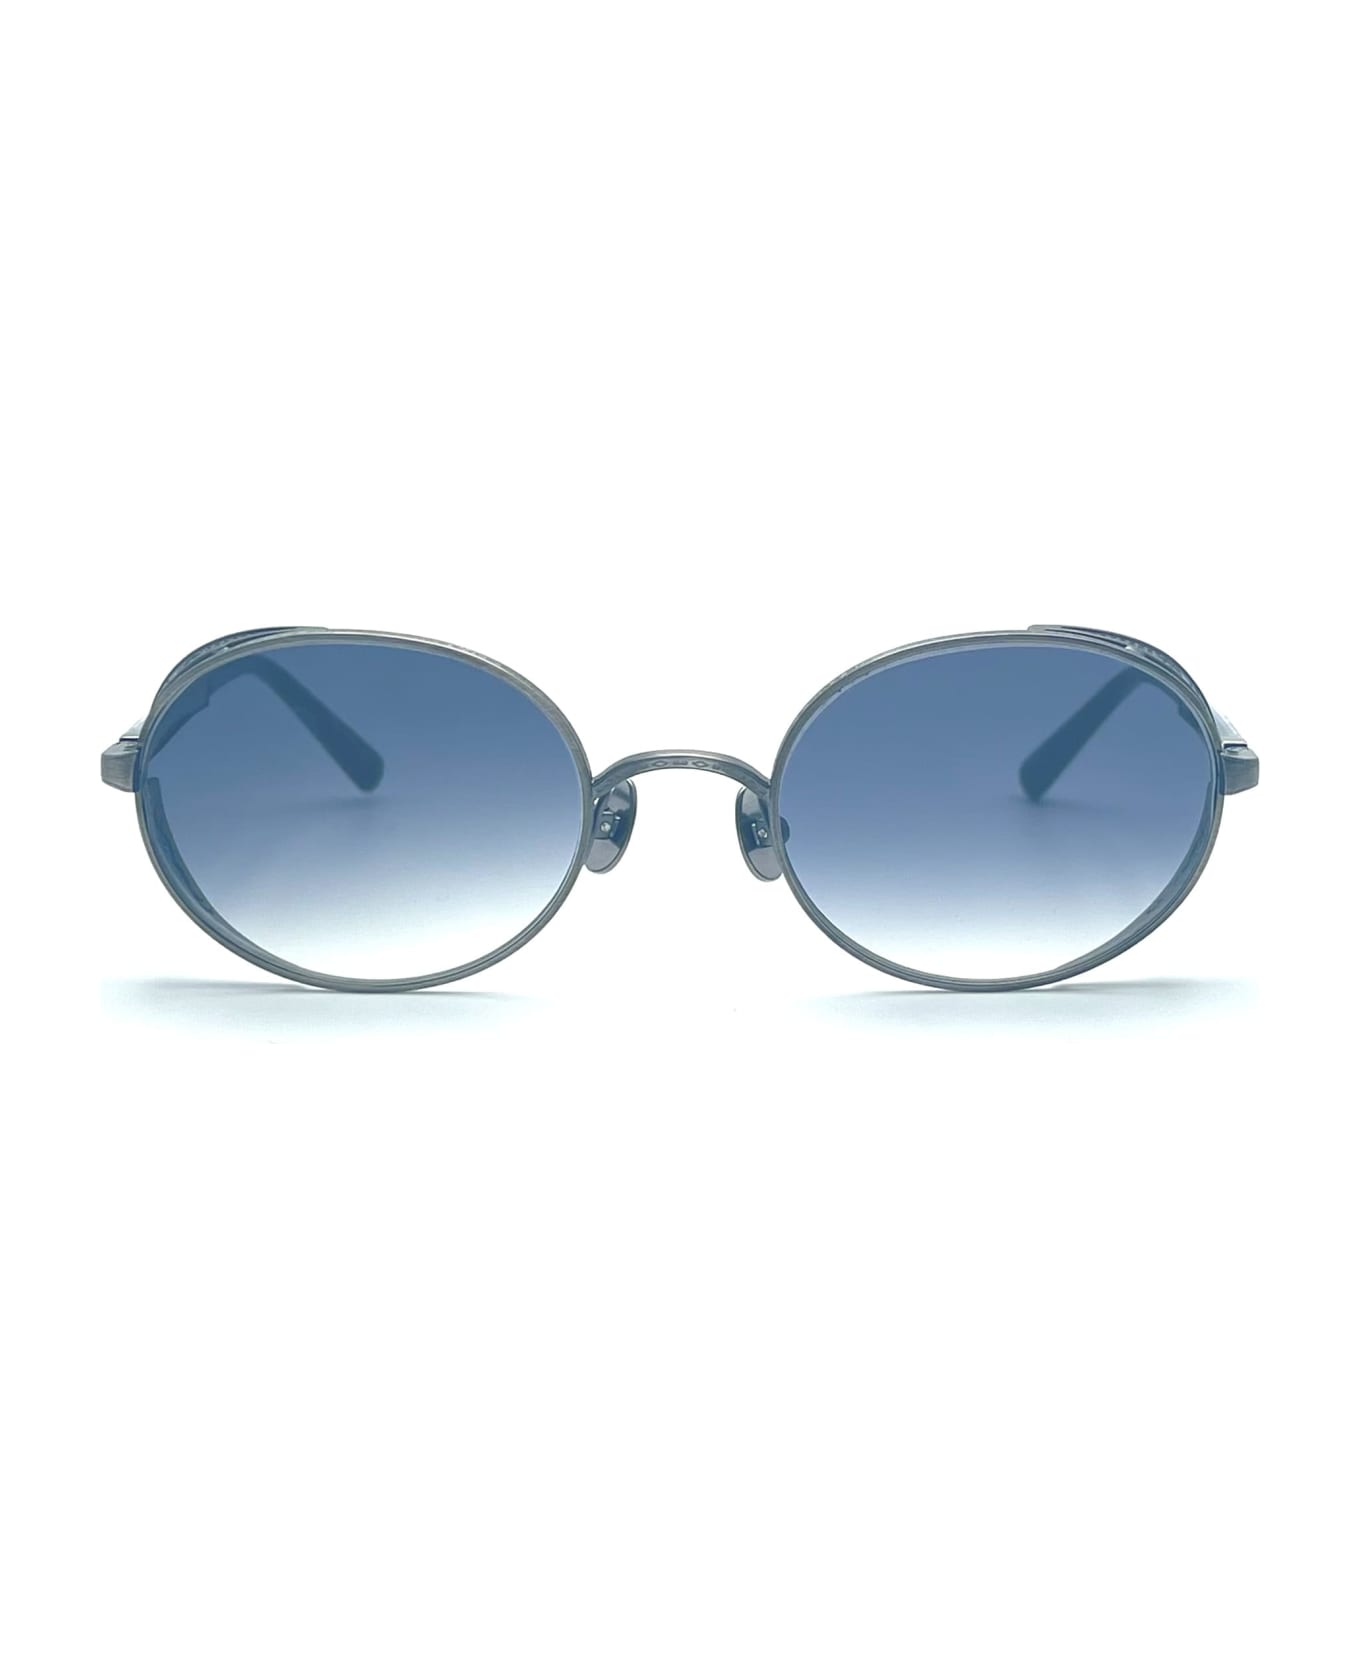 Matsuda M3137 - Antique Silver Sunglasses - Silver